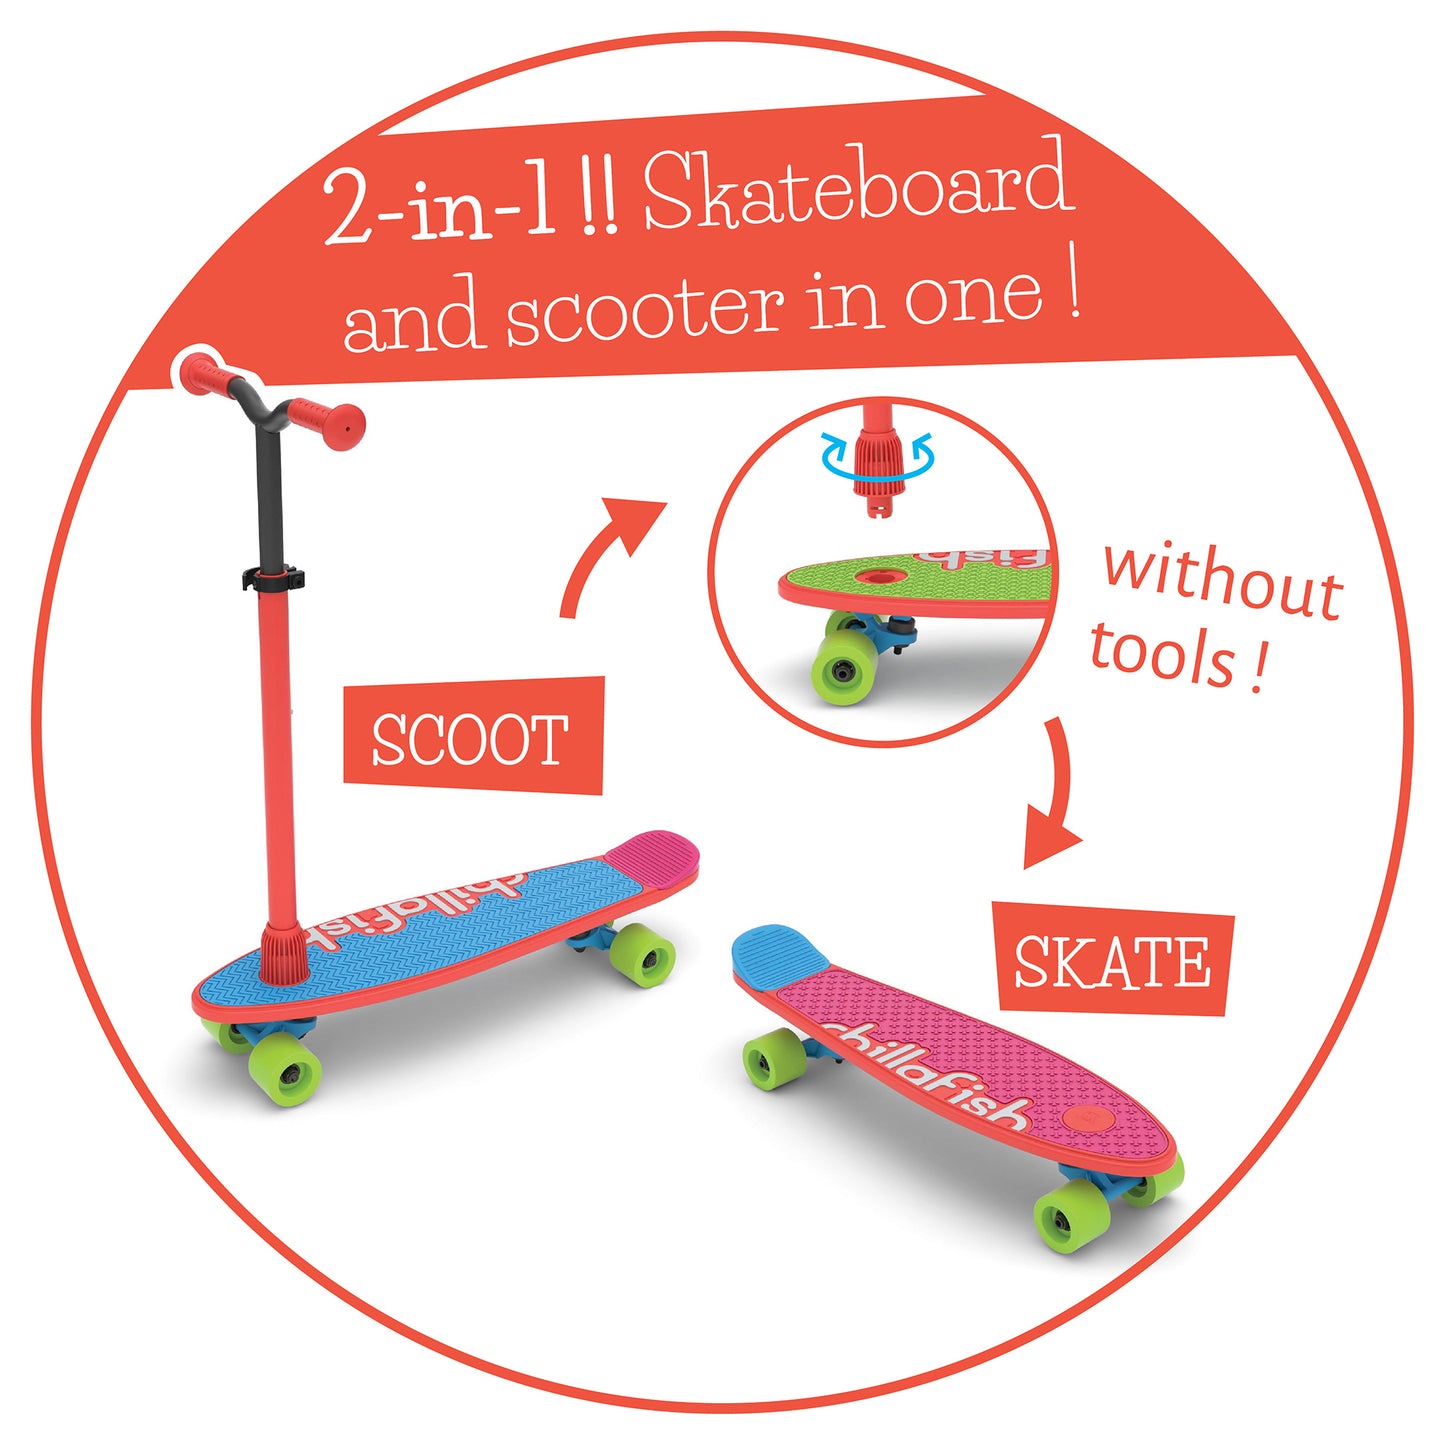 Skatieskootie - skate and scoot in one